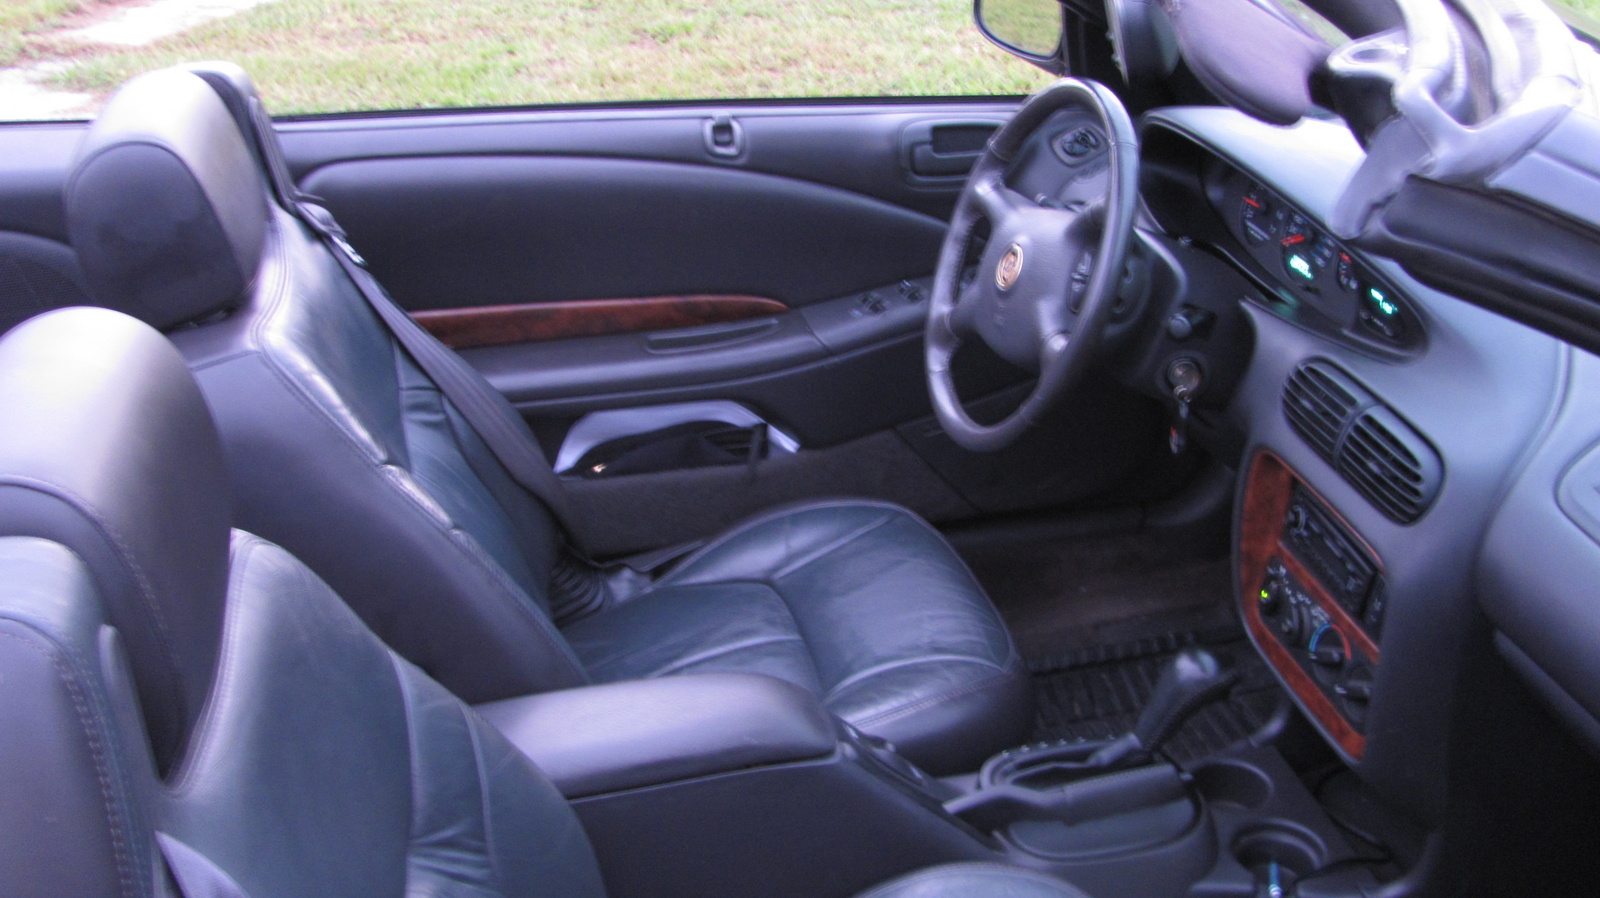 2000 Chrysler sebring lx review #4